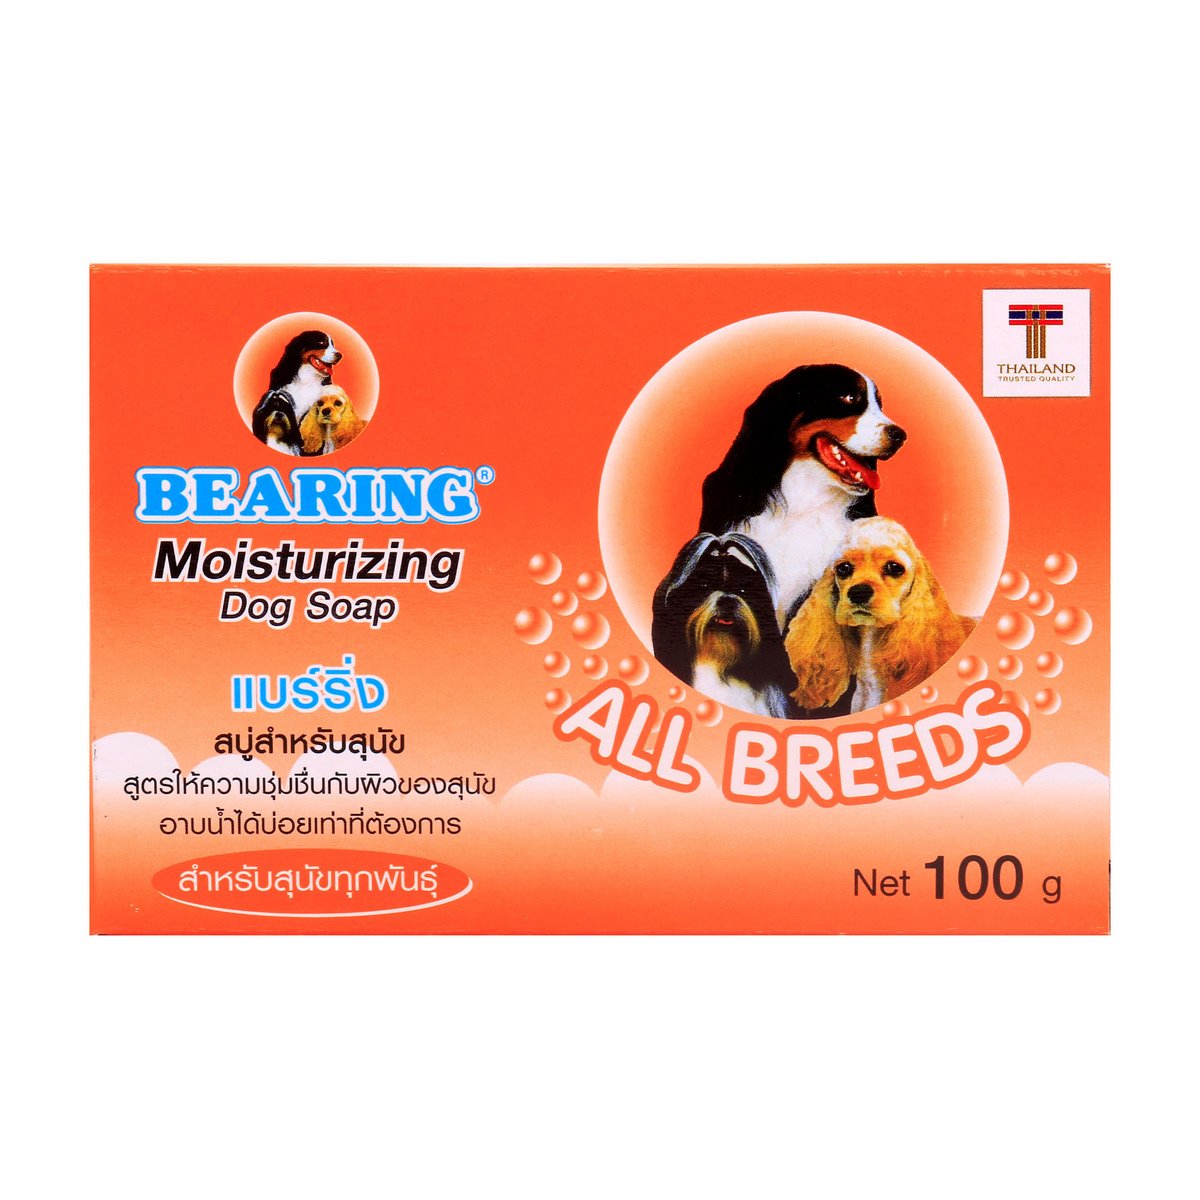 Bearing Dog Soap Moisturizing, 100 g